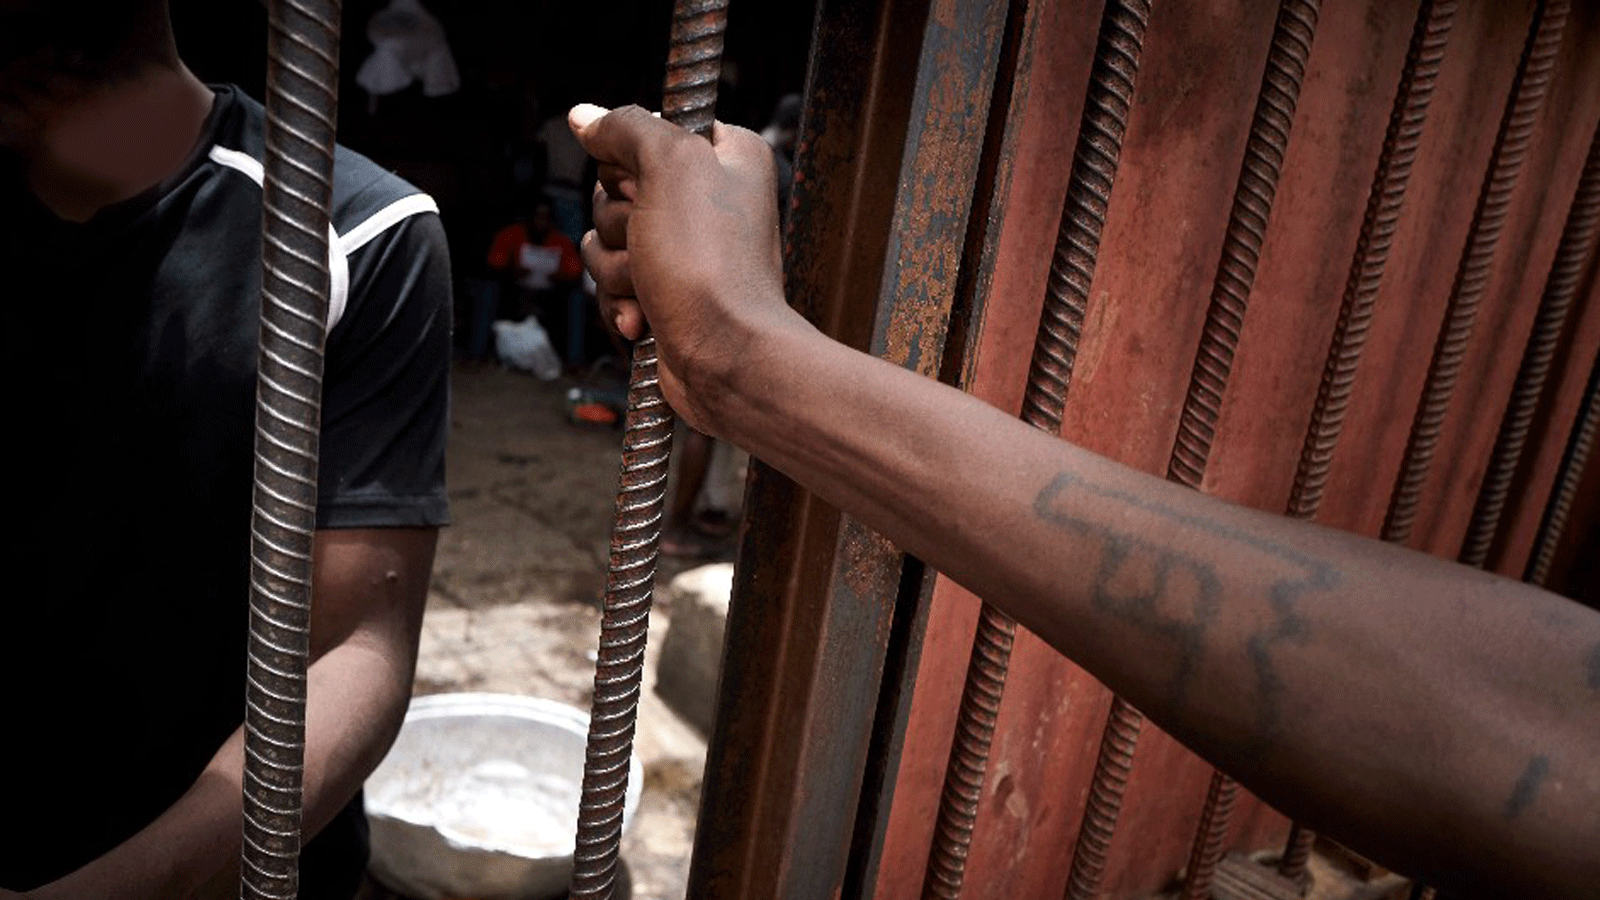 صورة من حادثة سابقة مشابهة وقعت في 13 أيلول/ سبتمبر 2021، حيث اقتحم مسلحون سجنًا في ولاية كوجي بوسط نيجيريا خلال الليل، وحرروا عشرات السجناء.